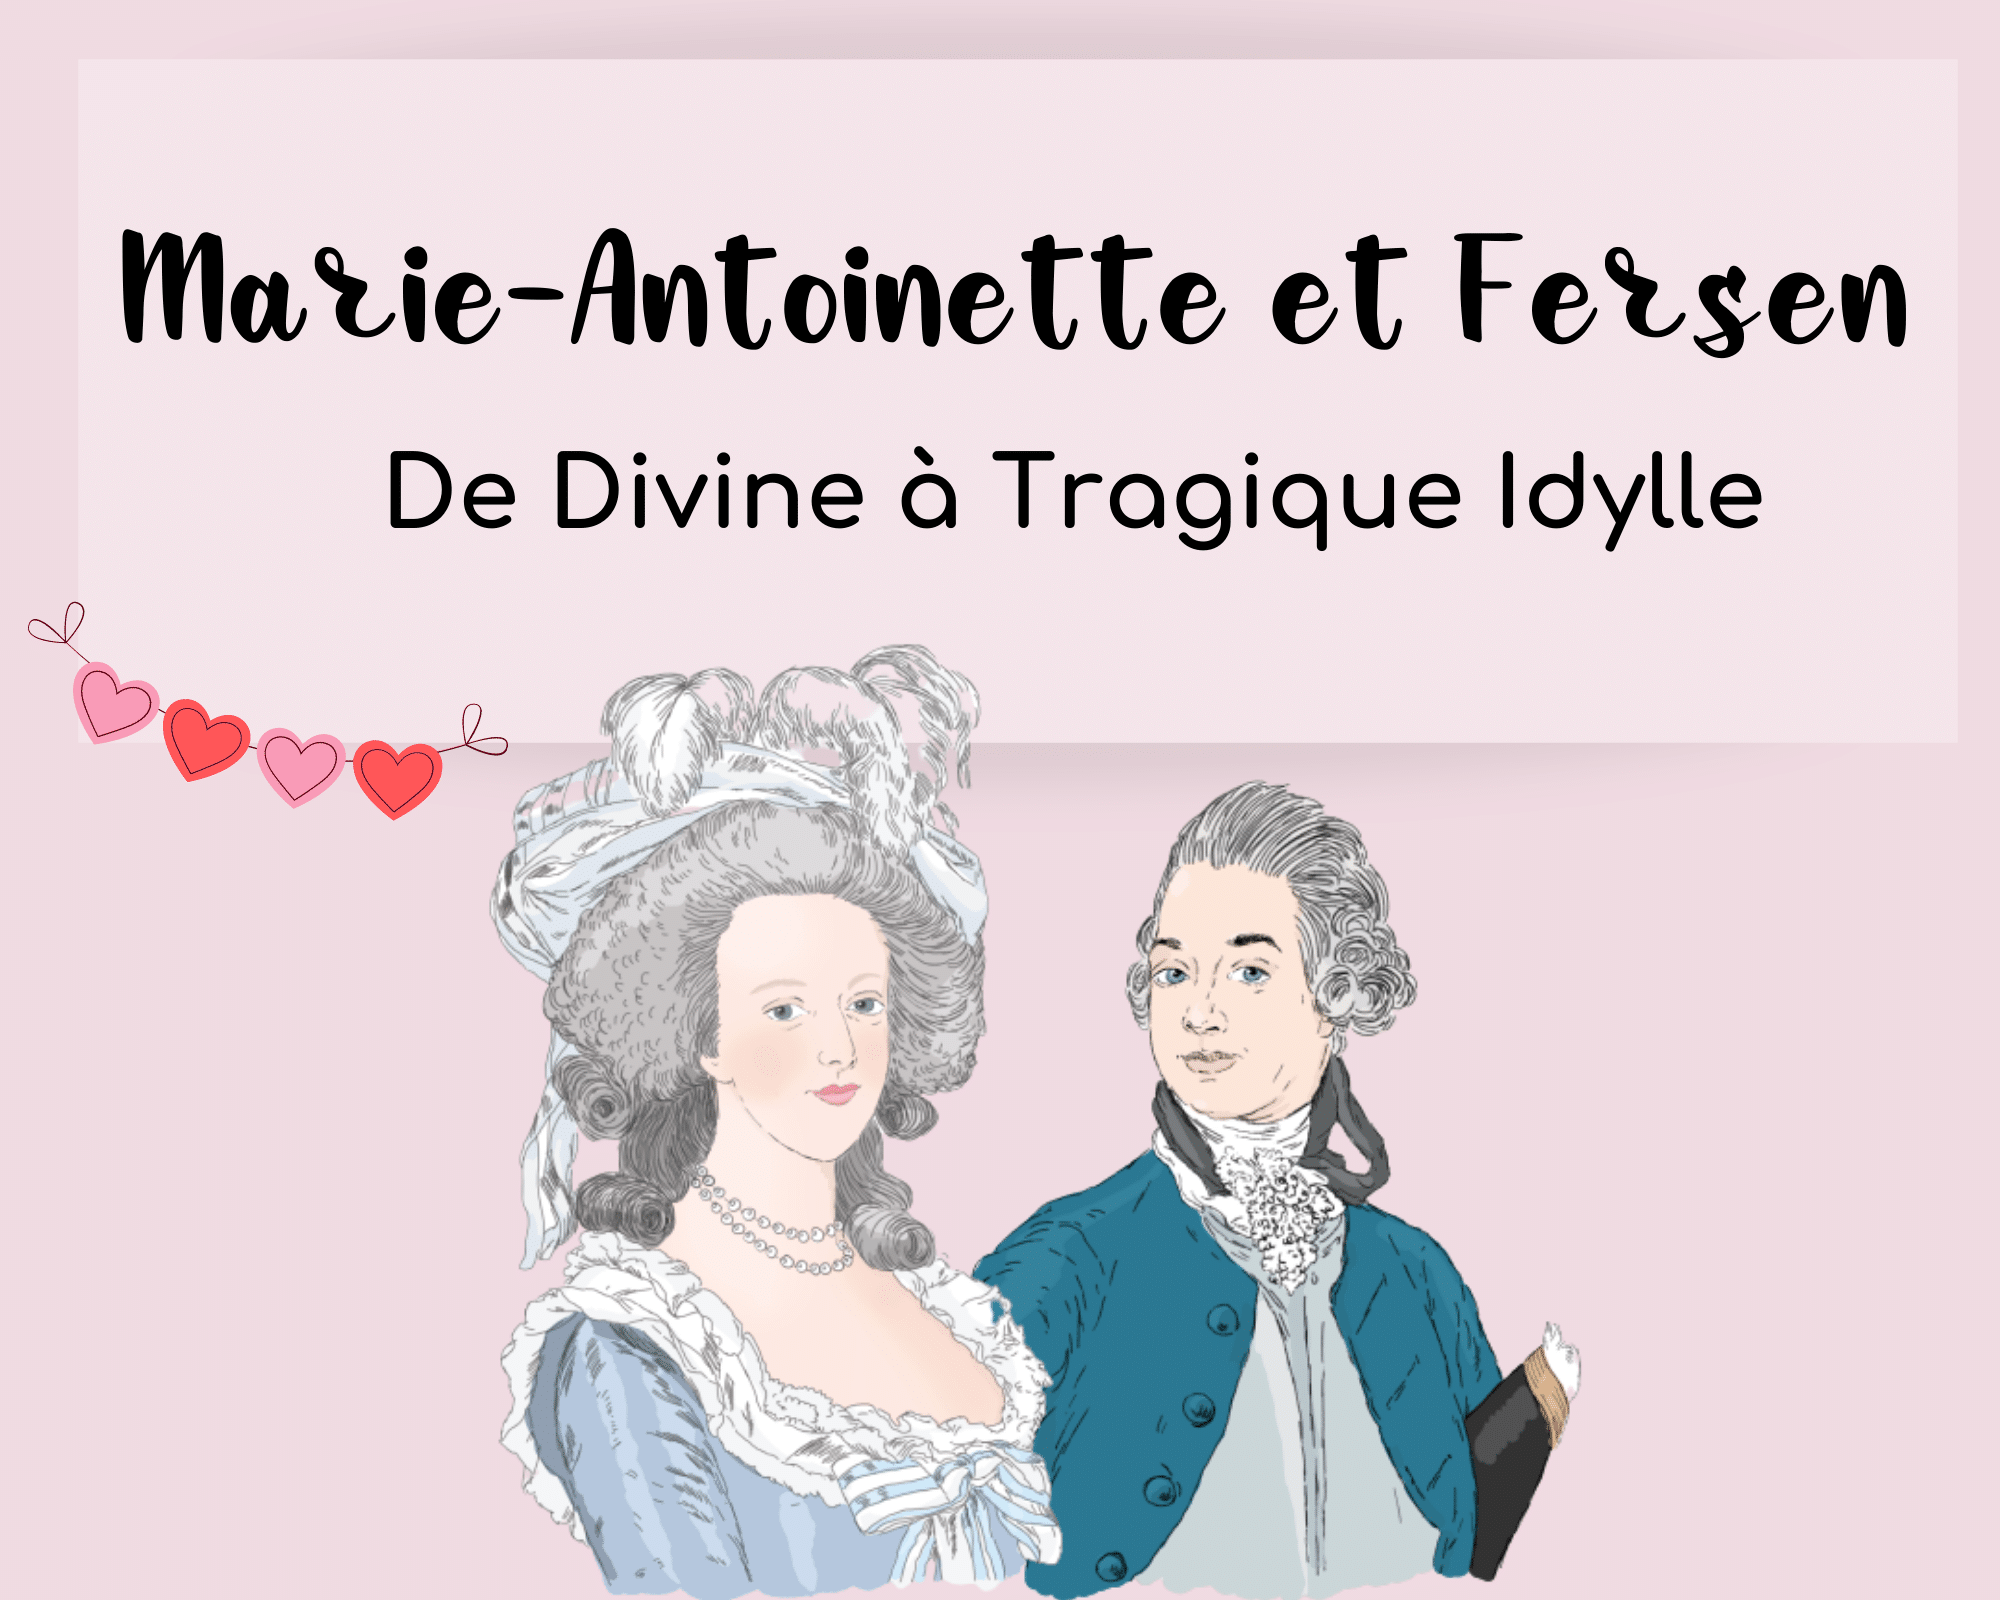 You are currently viewing Marie-Antoinette et Fersen : De divine à tragique idylle